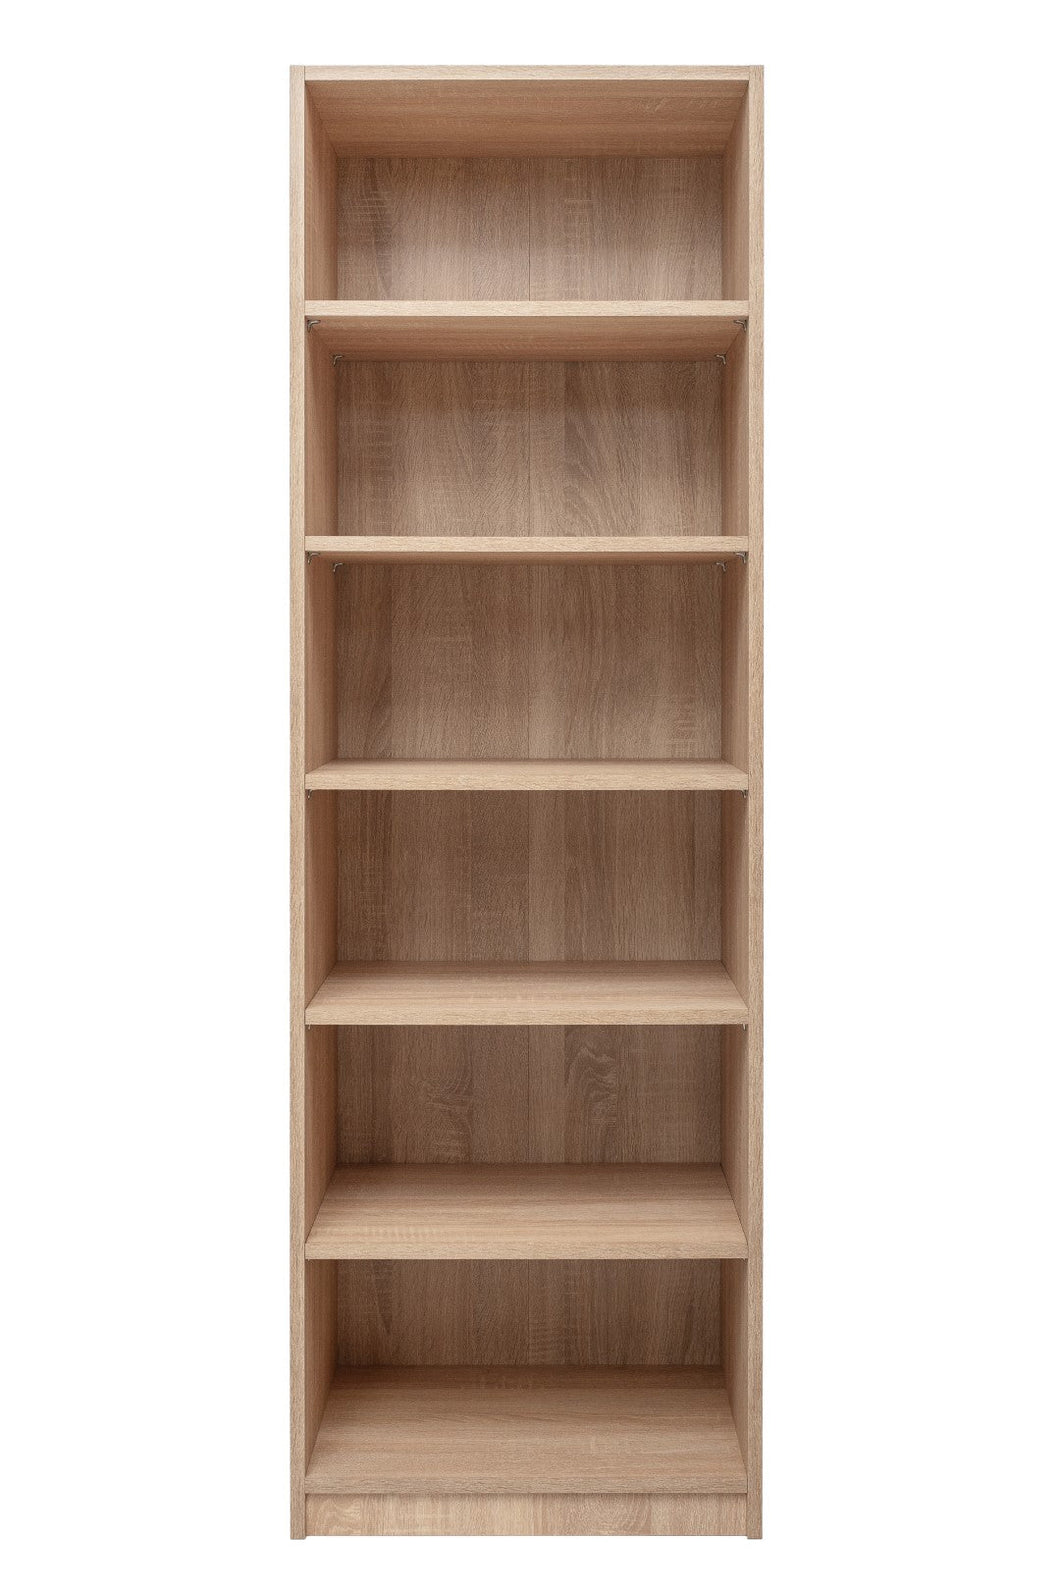 Geneva Built In Wardrobe - 6 Shelf Module - Natural Oak